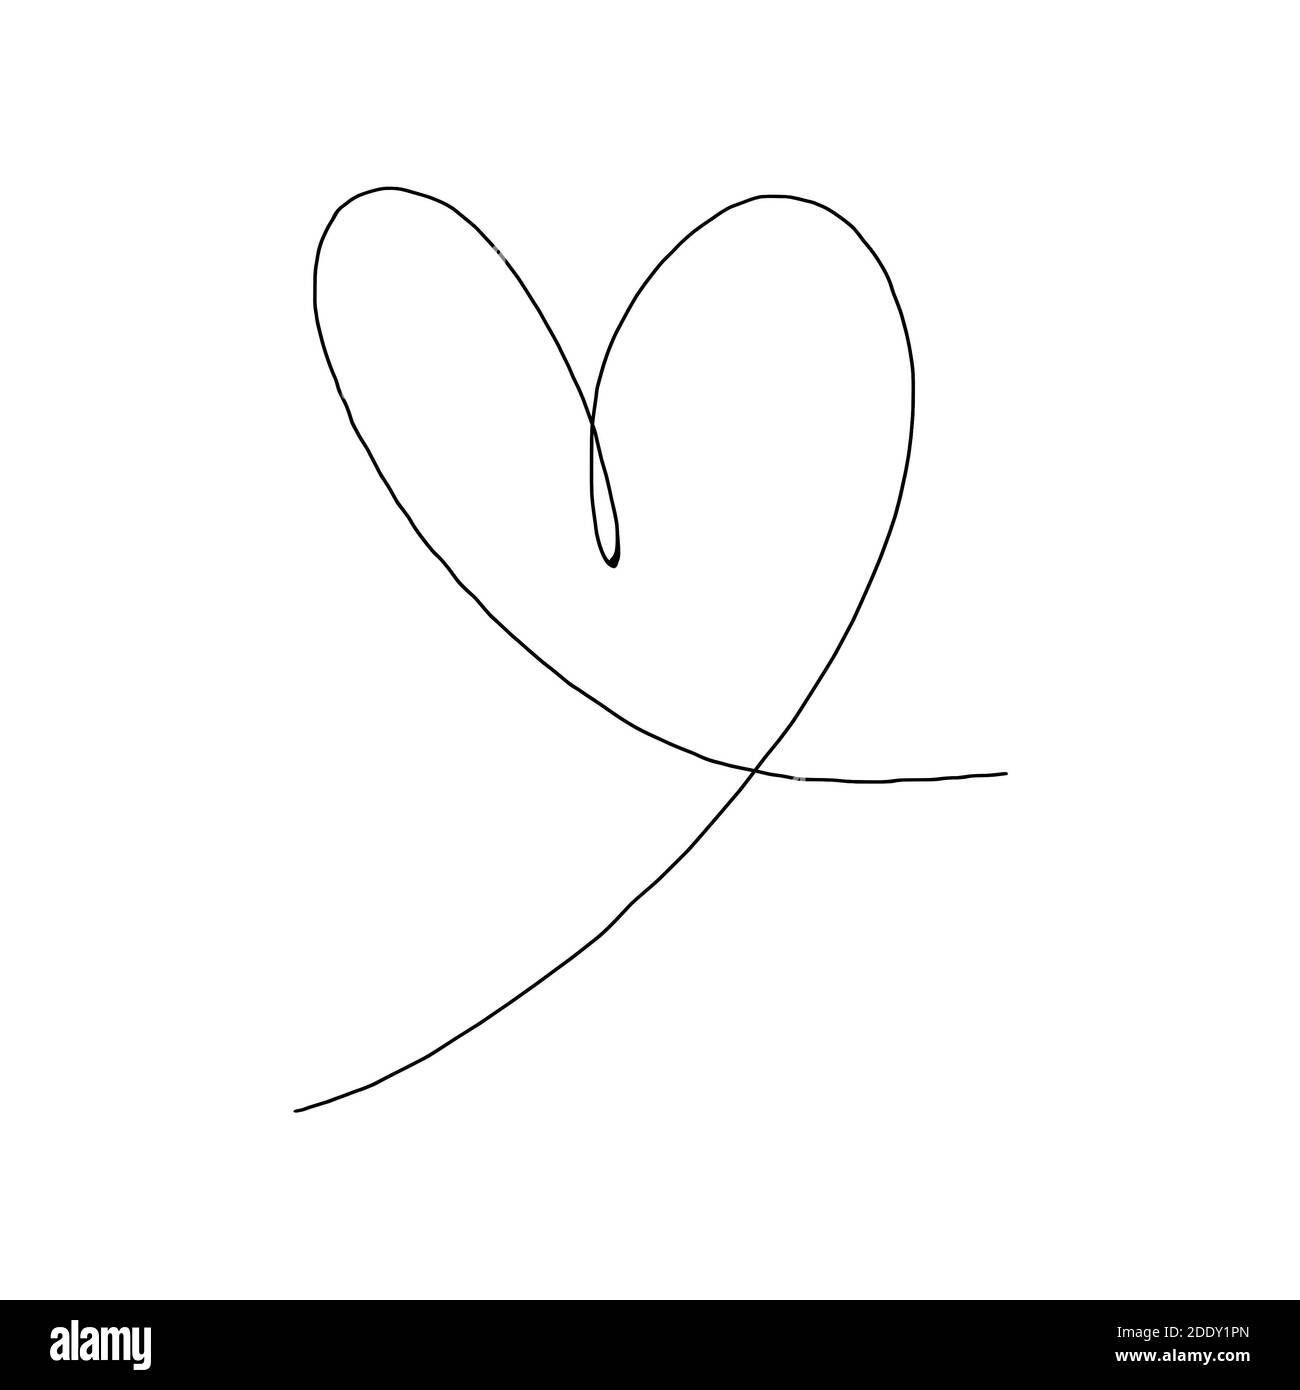 Handgezeichnetes Herz mit schwarzer Umrandung isoliert auf weißem Hintergrund. Kontinuierliche Linie in Form von Herz. Eine Linie zeichnen. Vorlage für T-Shirt, Poster, BA Stockfoto